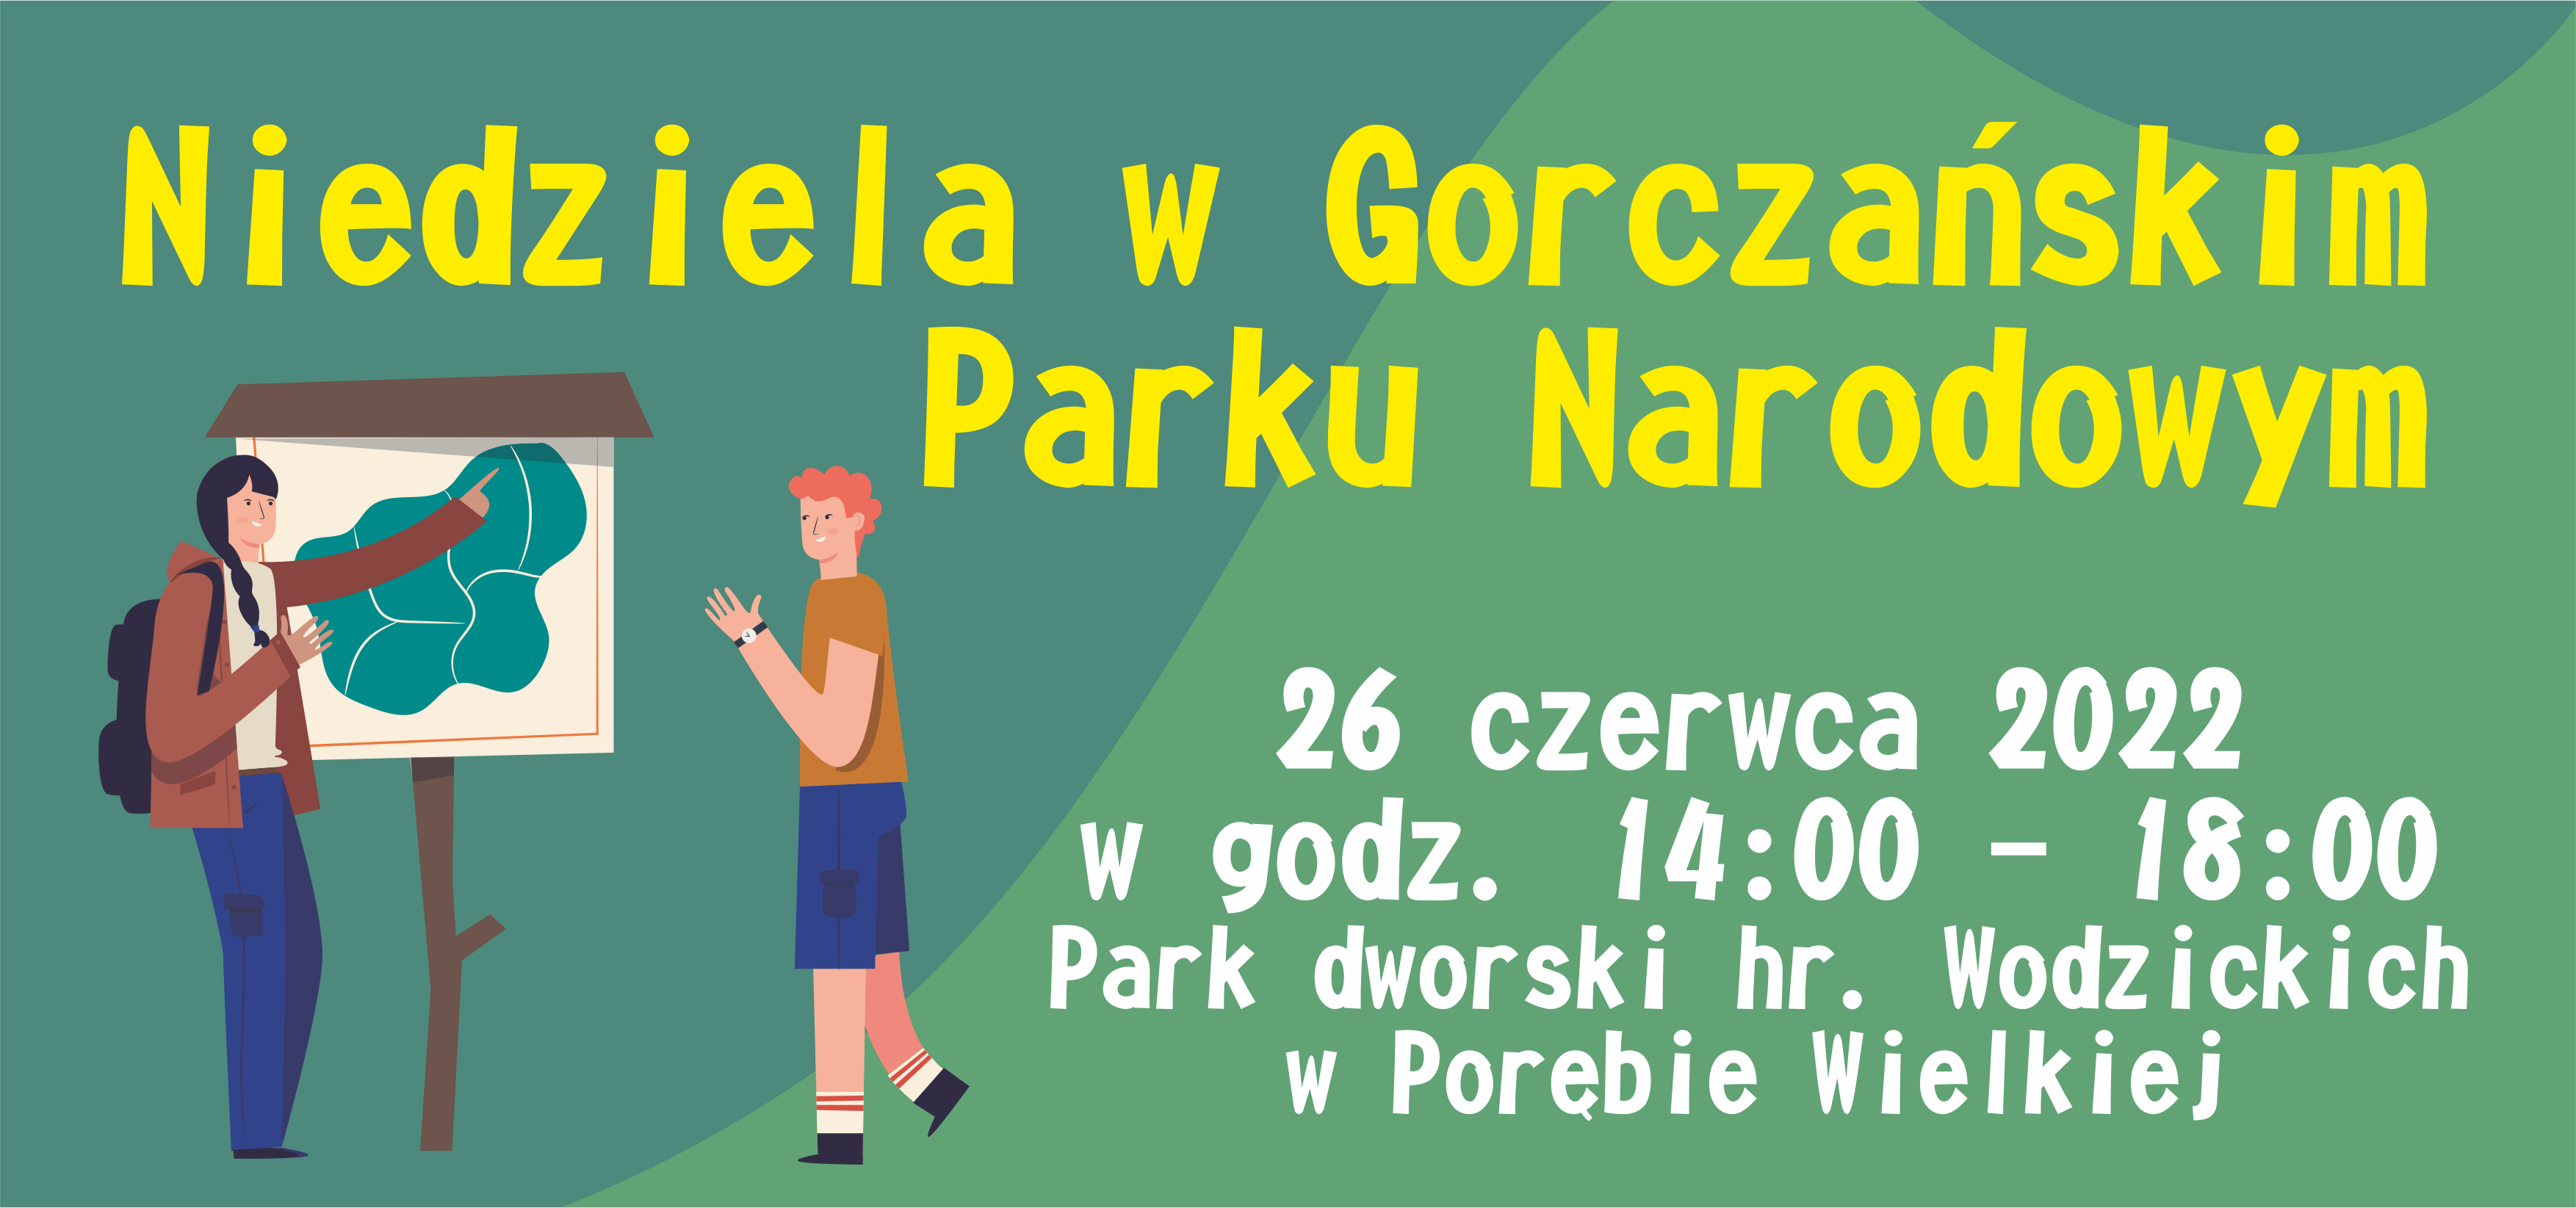 Zaproszenie na "Niedzielę w Gorczańskim Parku Narodowym"